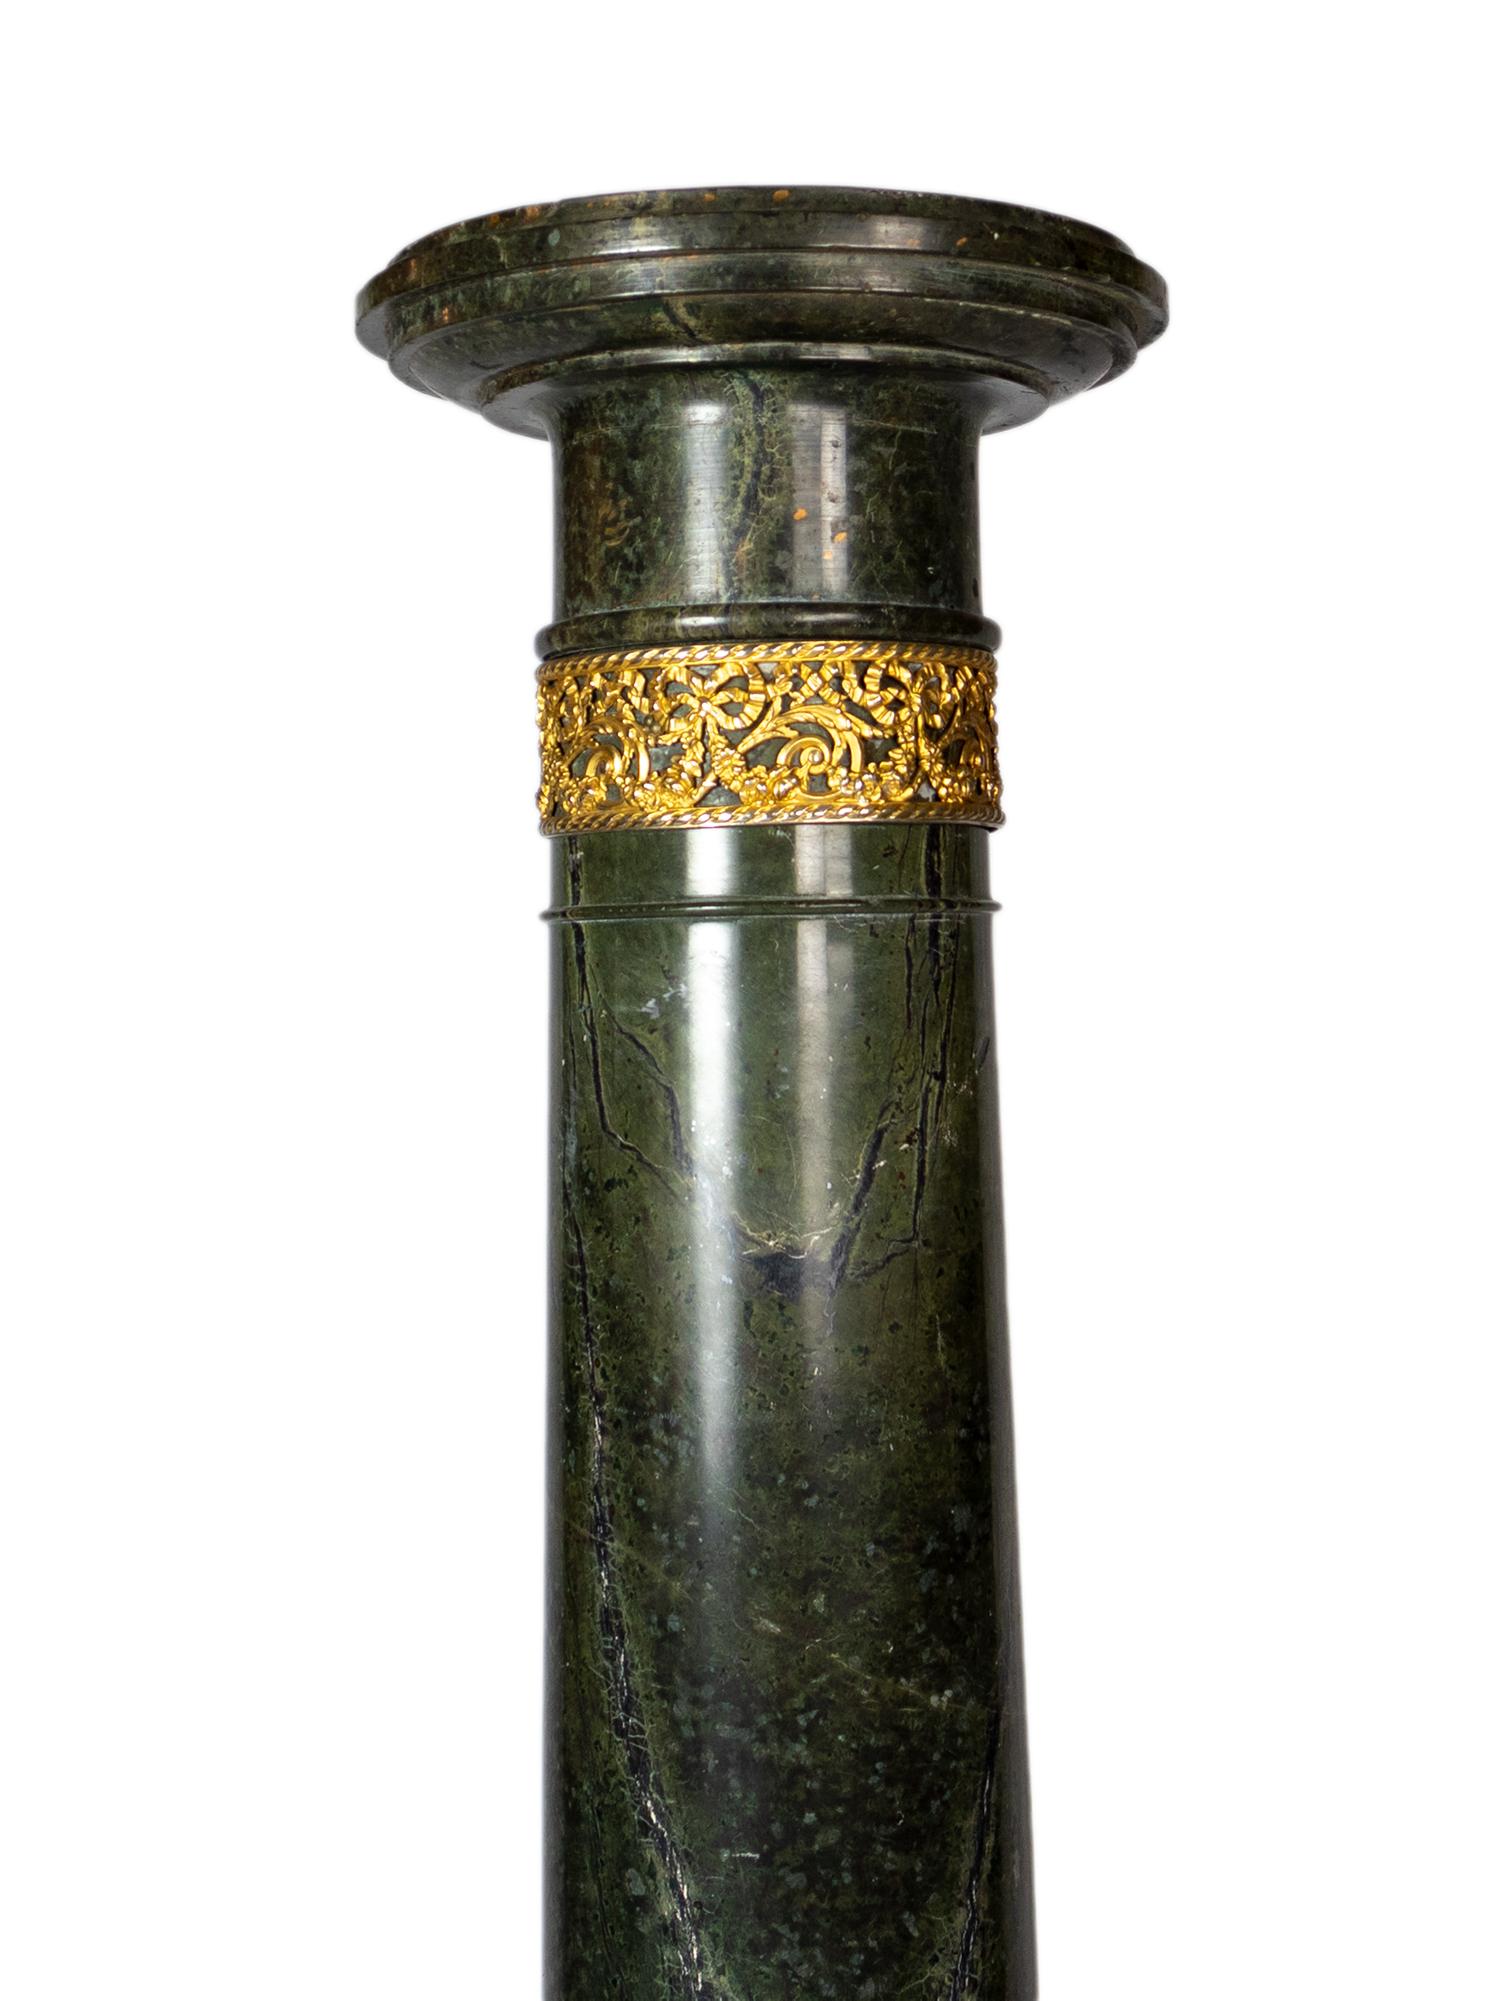 Neoklassizistische Säule aus grünem Alpenmarmor, vergoldete Bronze.
Ein Sockel aus dem späten 19. Jahrhundert für das klassische Dekor.   

